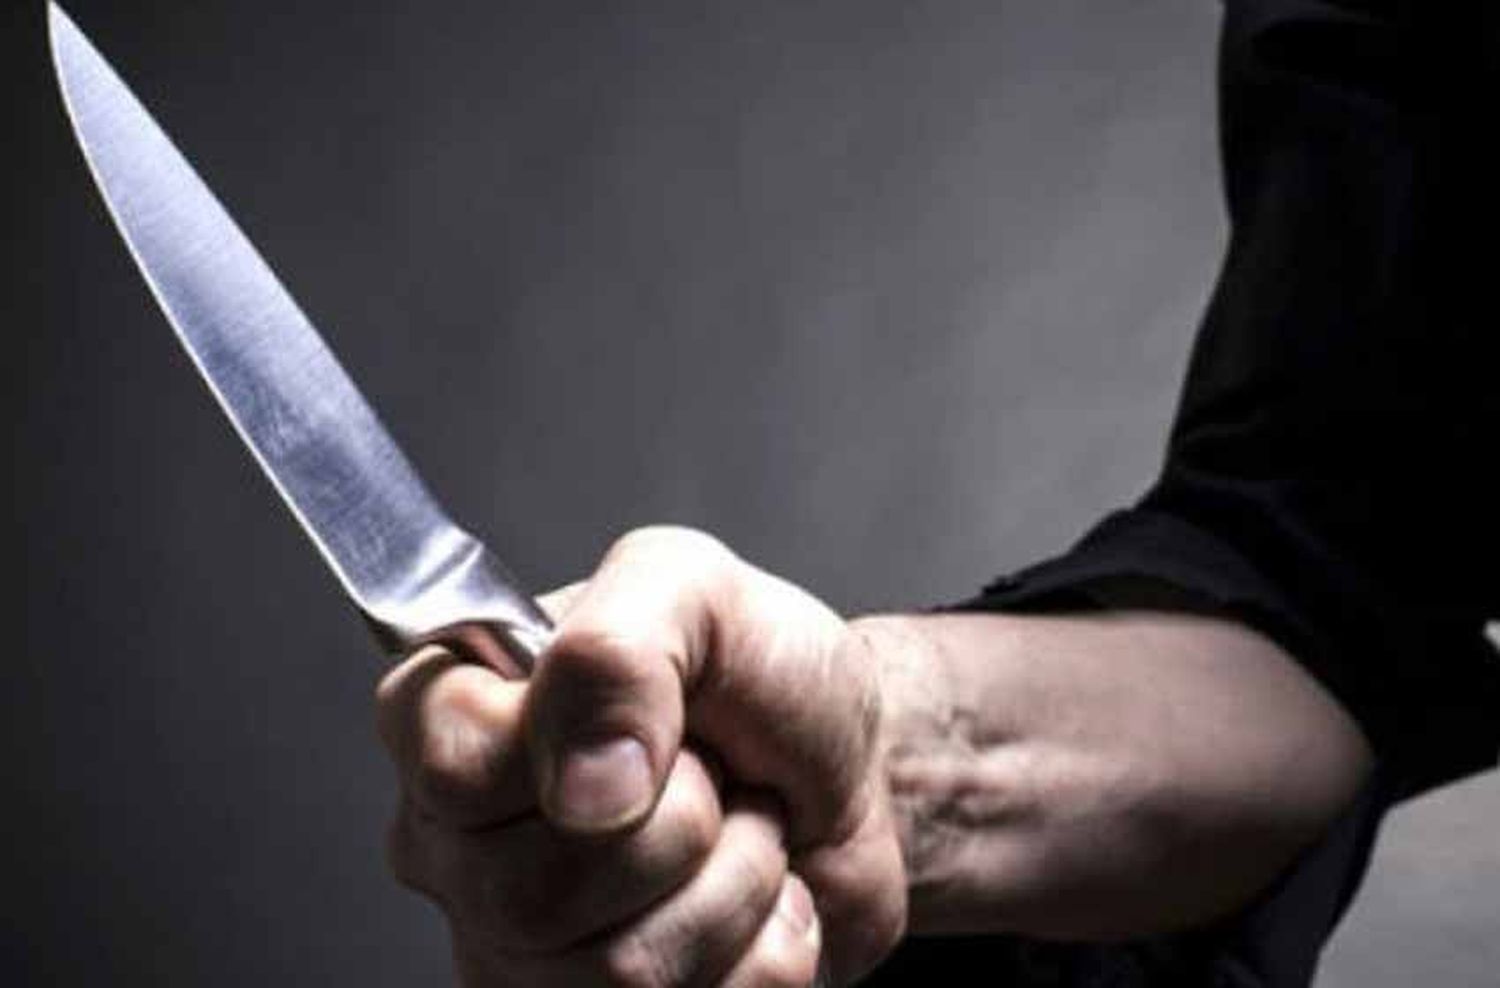 Se encerró en su casa rodeado de cuchillos y amenazó con quitarse la vida frente a su pareja